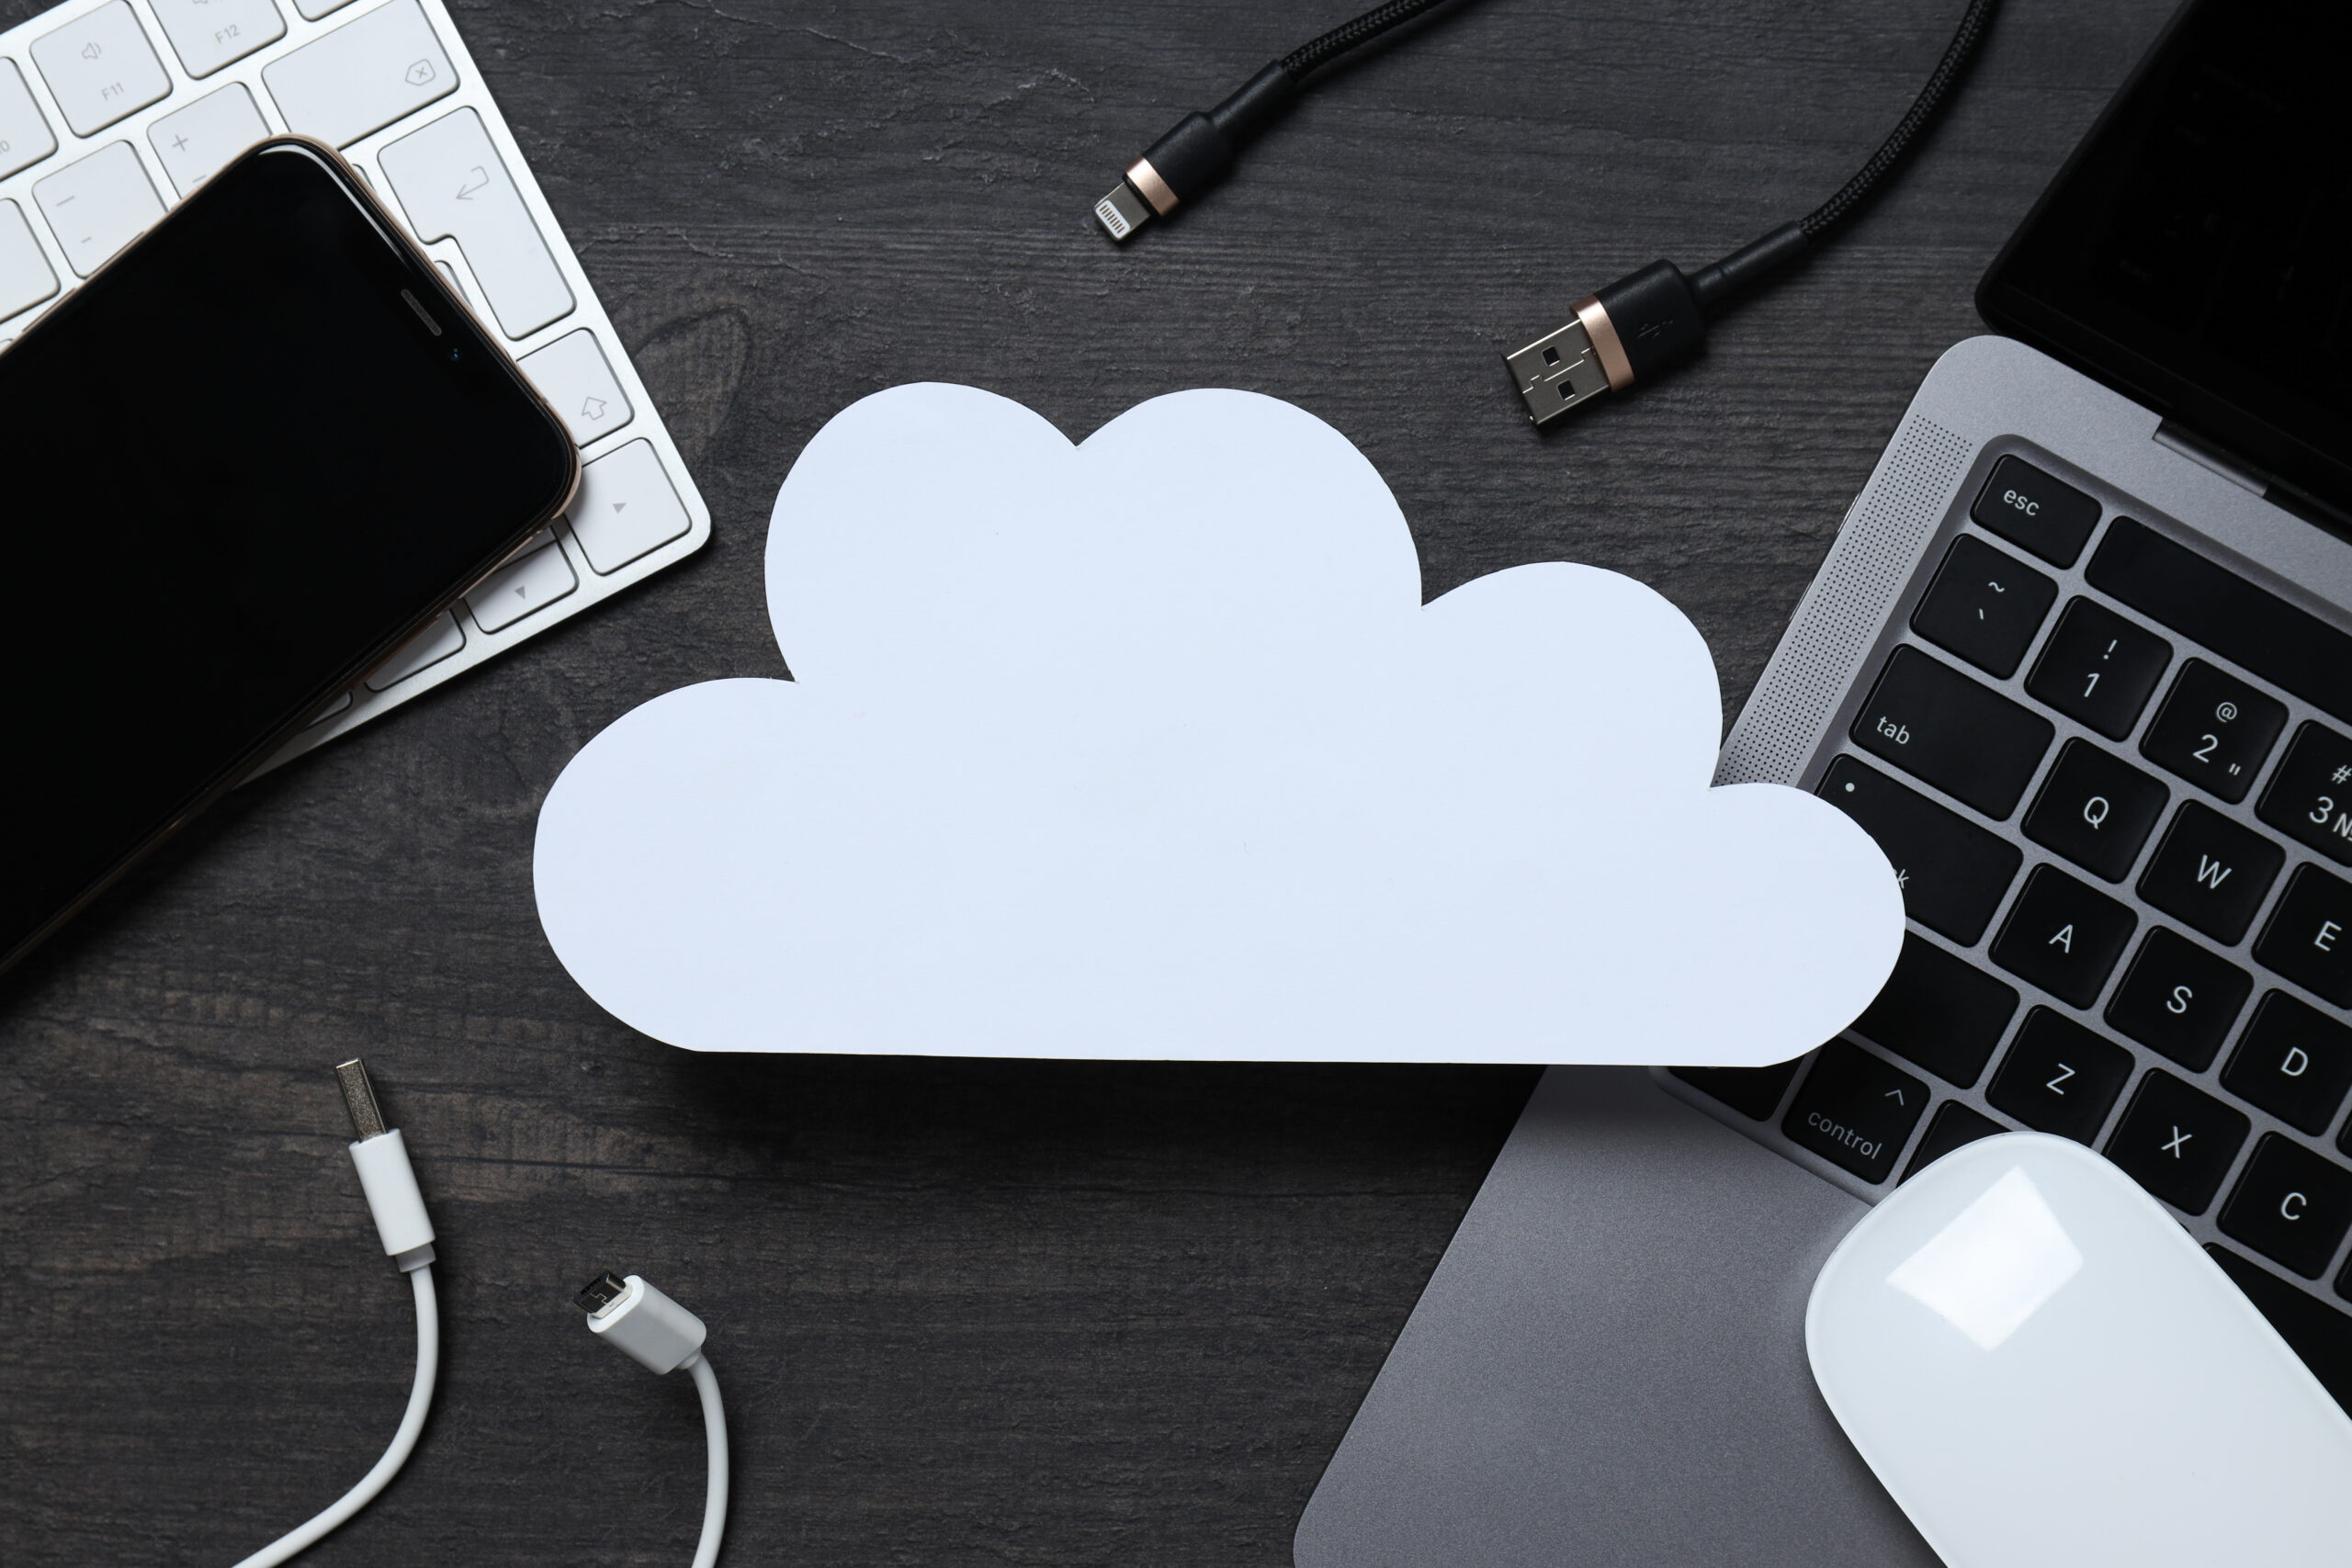 Imagem capa do conteúdo sobre StackSpot Cloud Service, onde há uma nuvem de papel branca ao centro, atrás está uma mesa com teclado de notebook e cabos de computador.